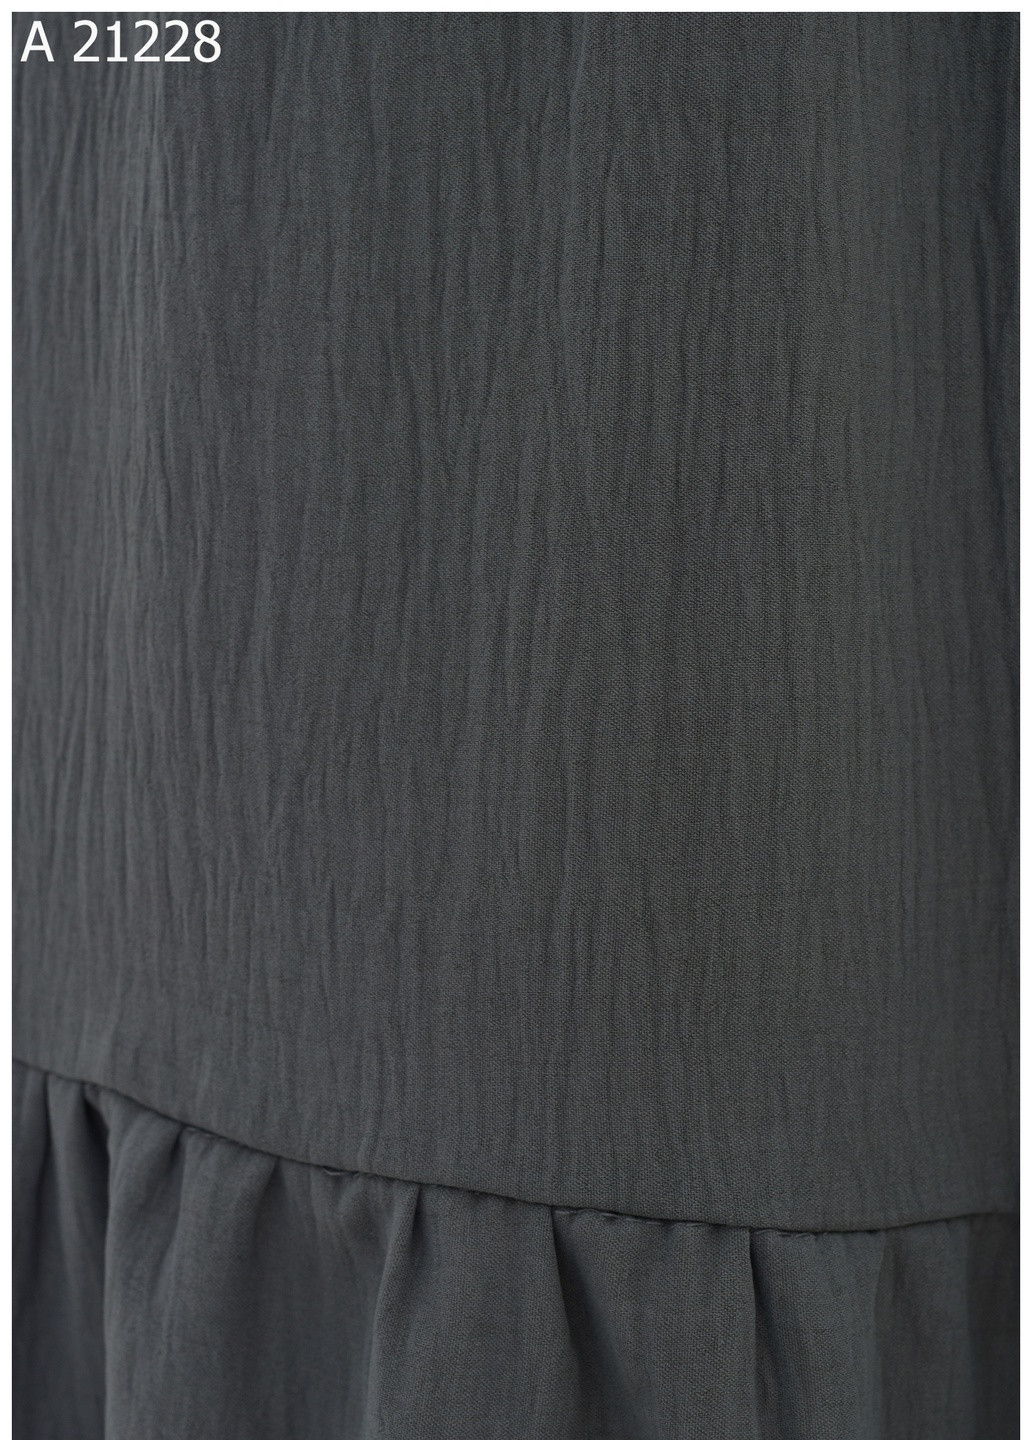 Жіноча літня юбка великого розміру SK (259035607)